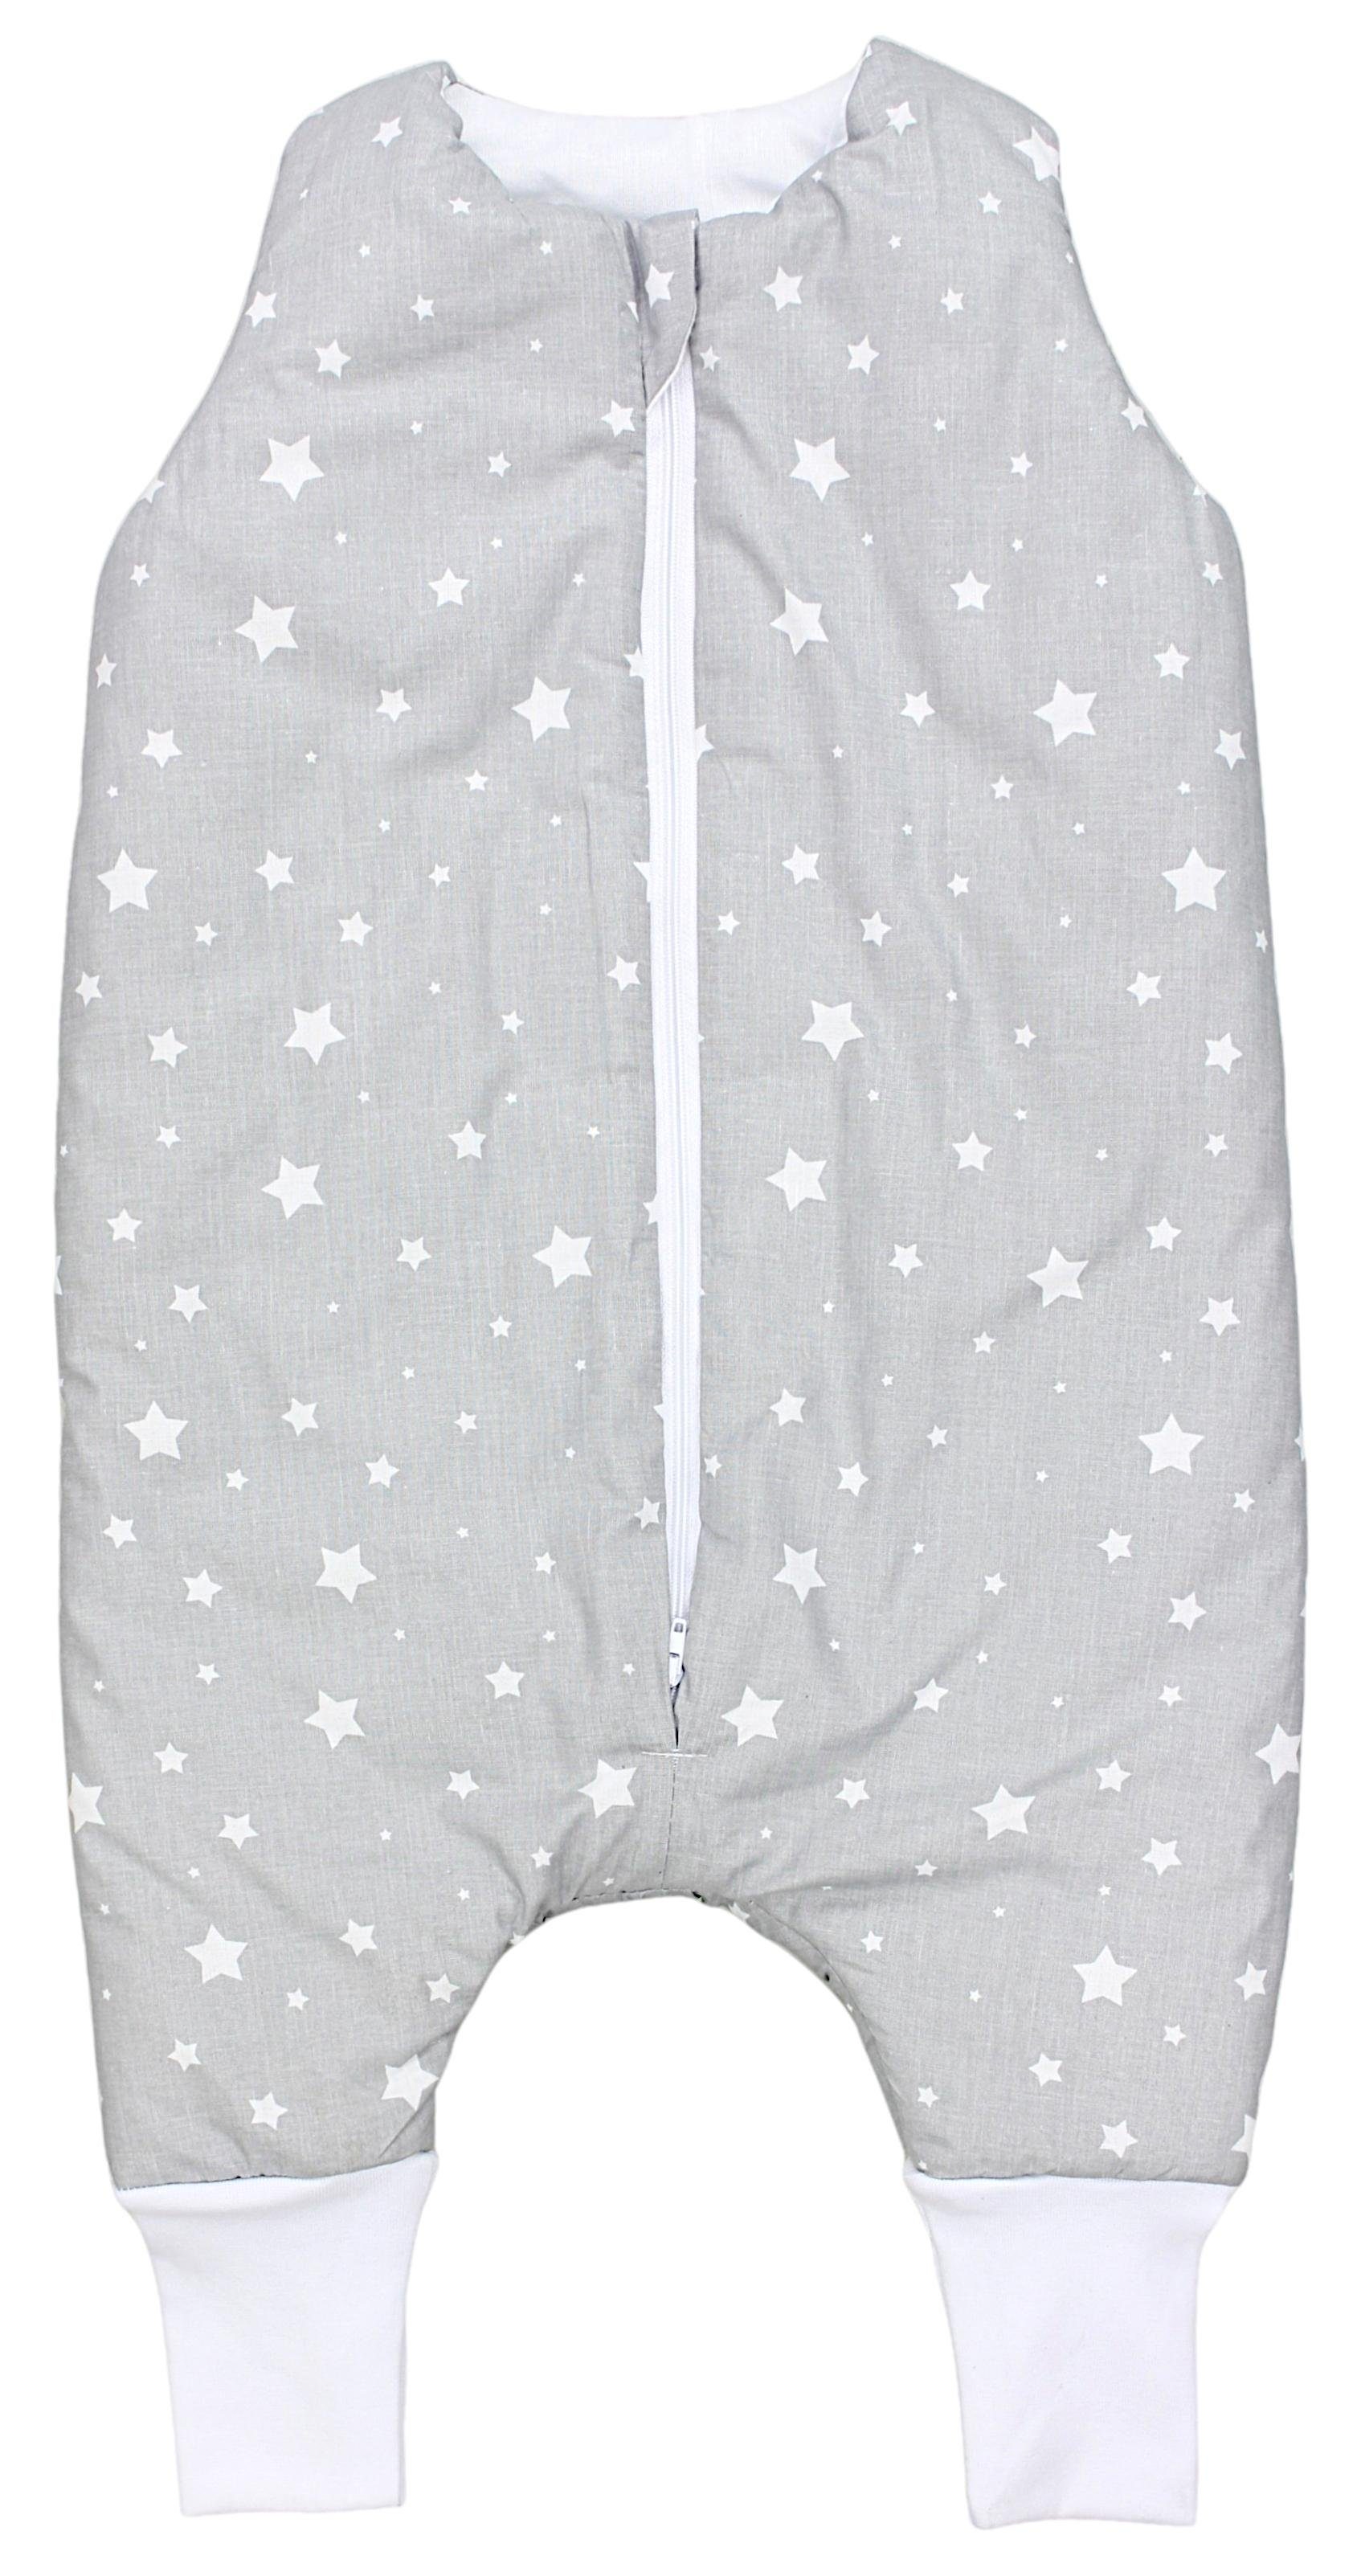 TupTam Babyschlafsack mit Beinen Winterschlafsack OEKO-TEX zertifiziert 2.5 TOG Sterne Weiß / Grau | 